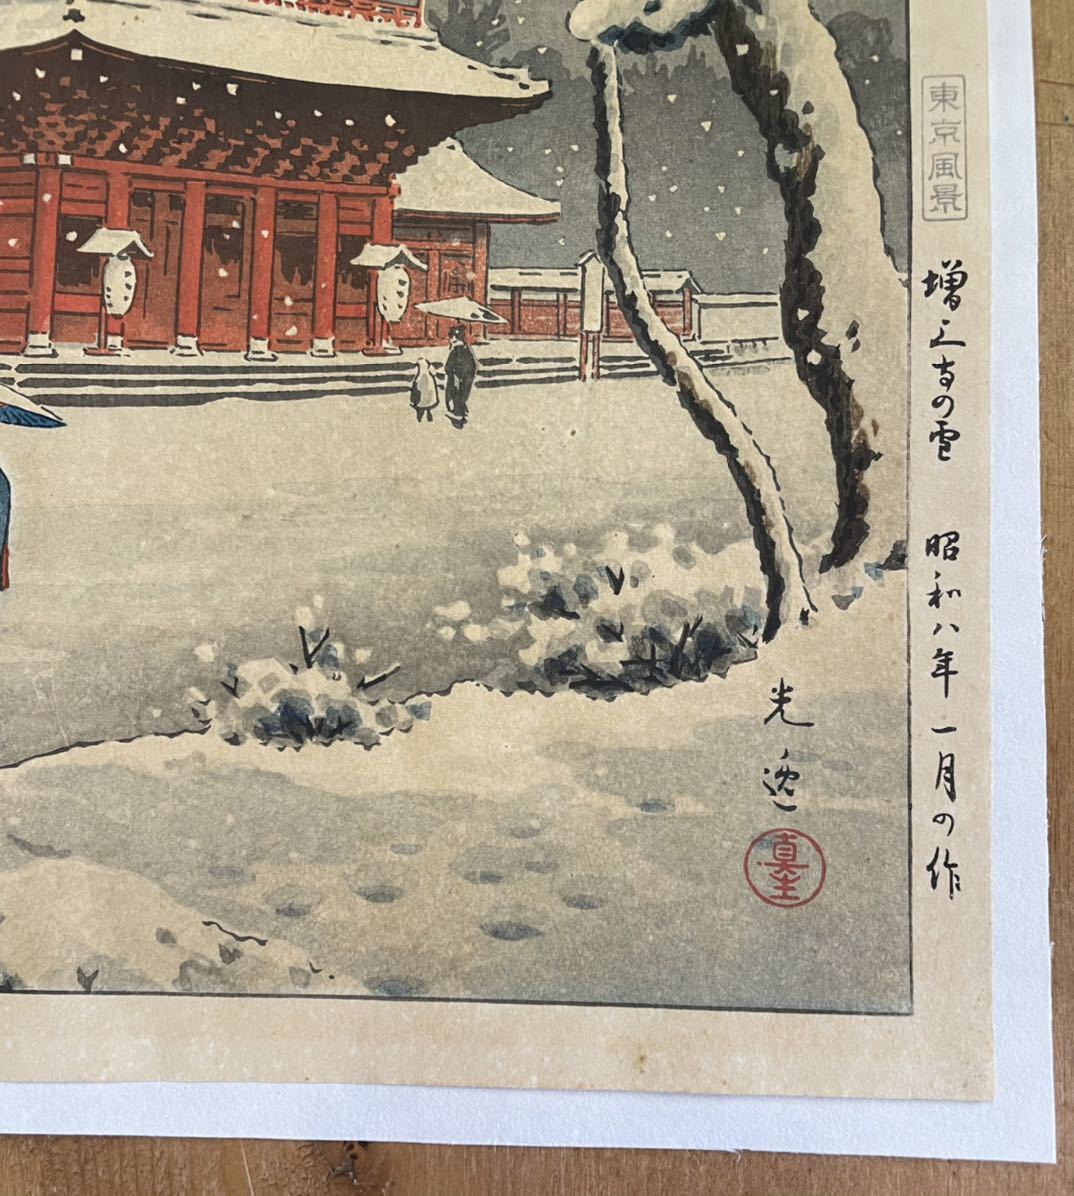 土屋光逸 東京風景 増上寺の雪 昭和8年作 土井貞一 初摺り 木版画 